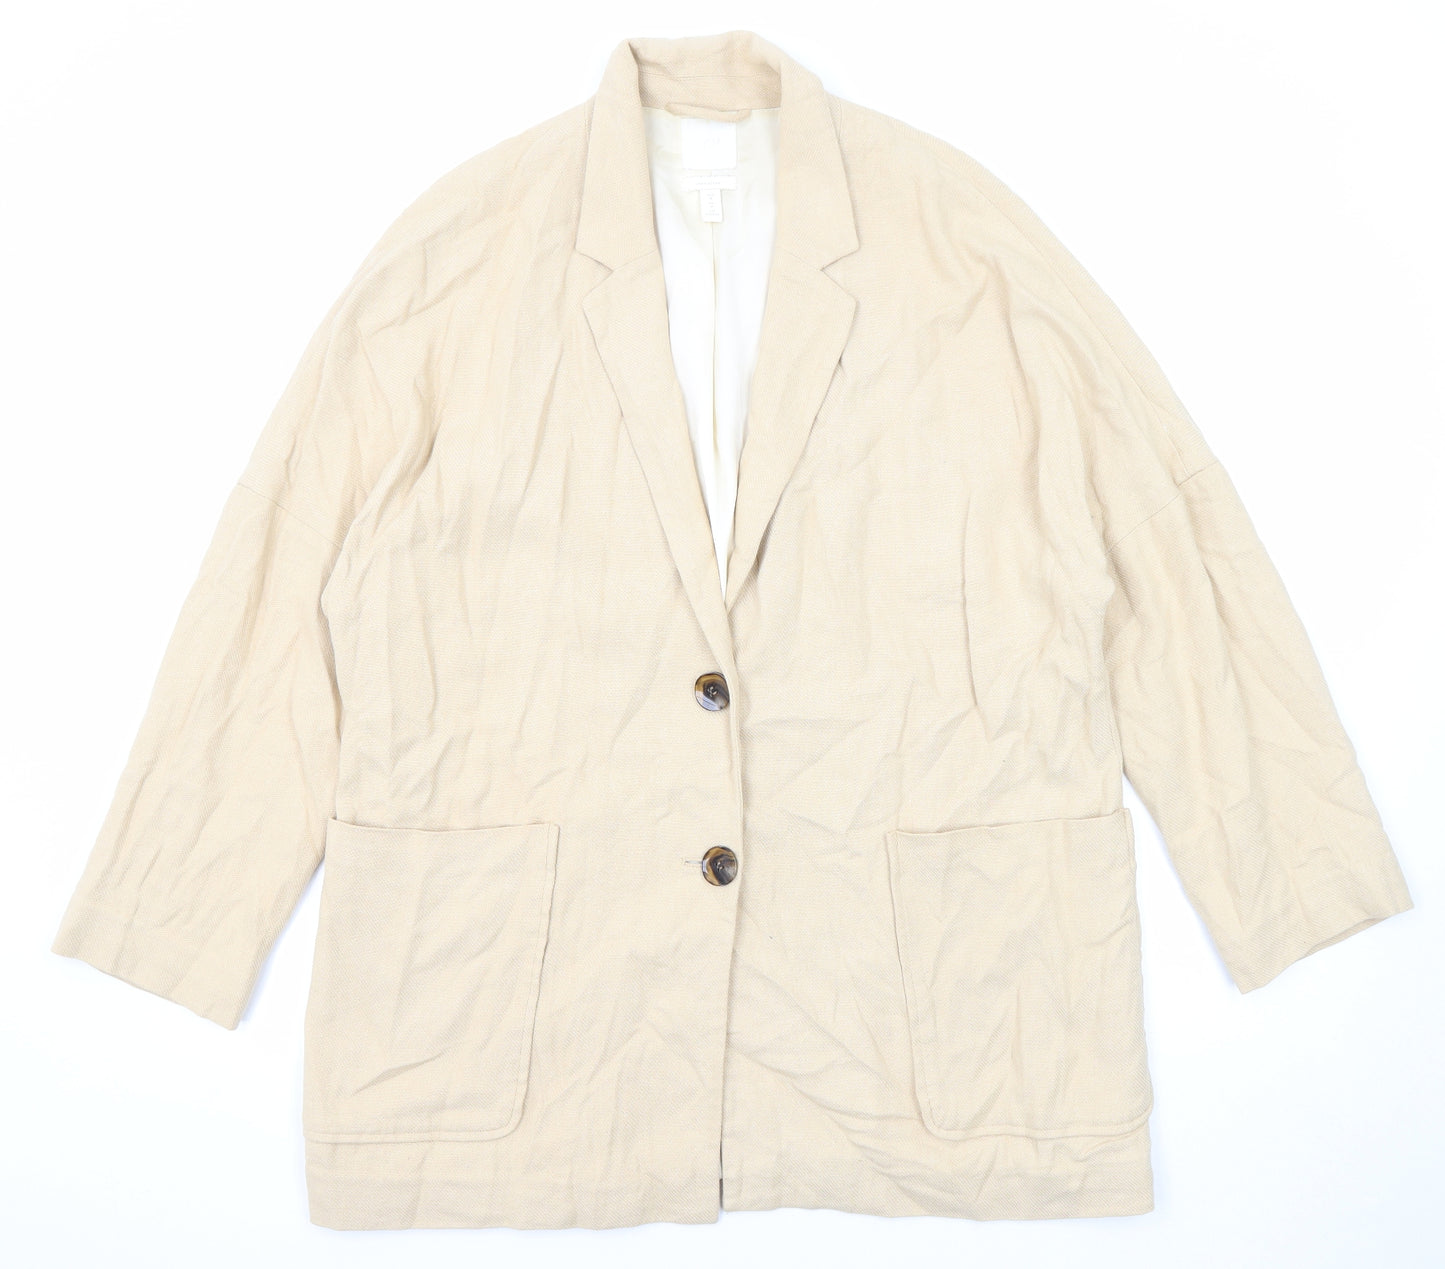 H&M Womens Beige Jacket Blazer Size M Button